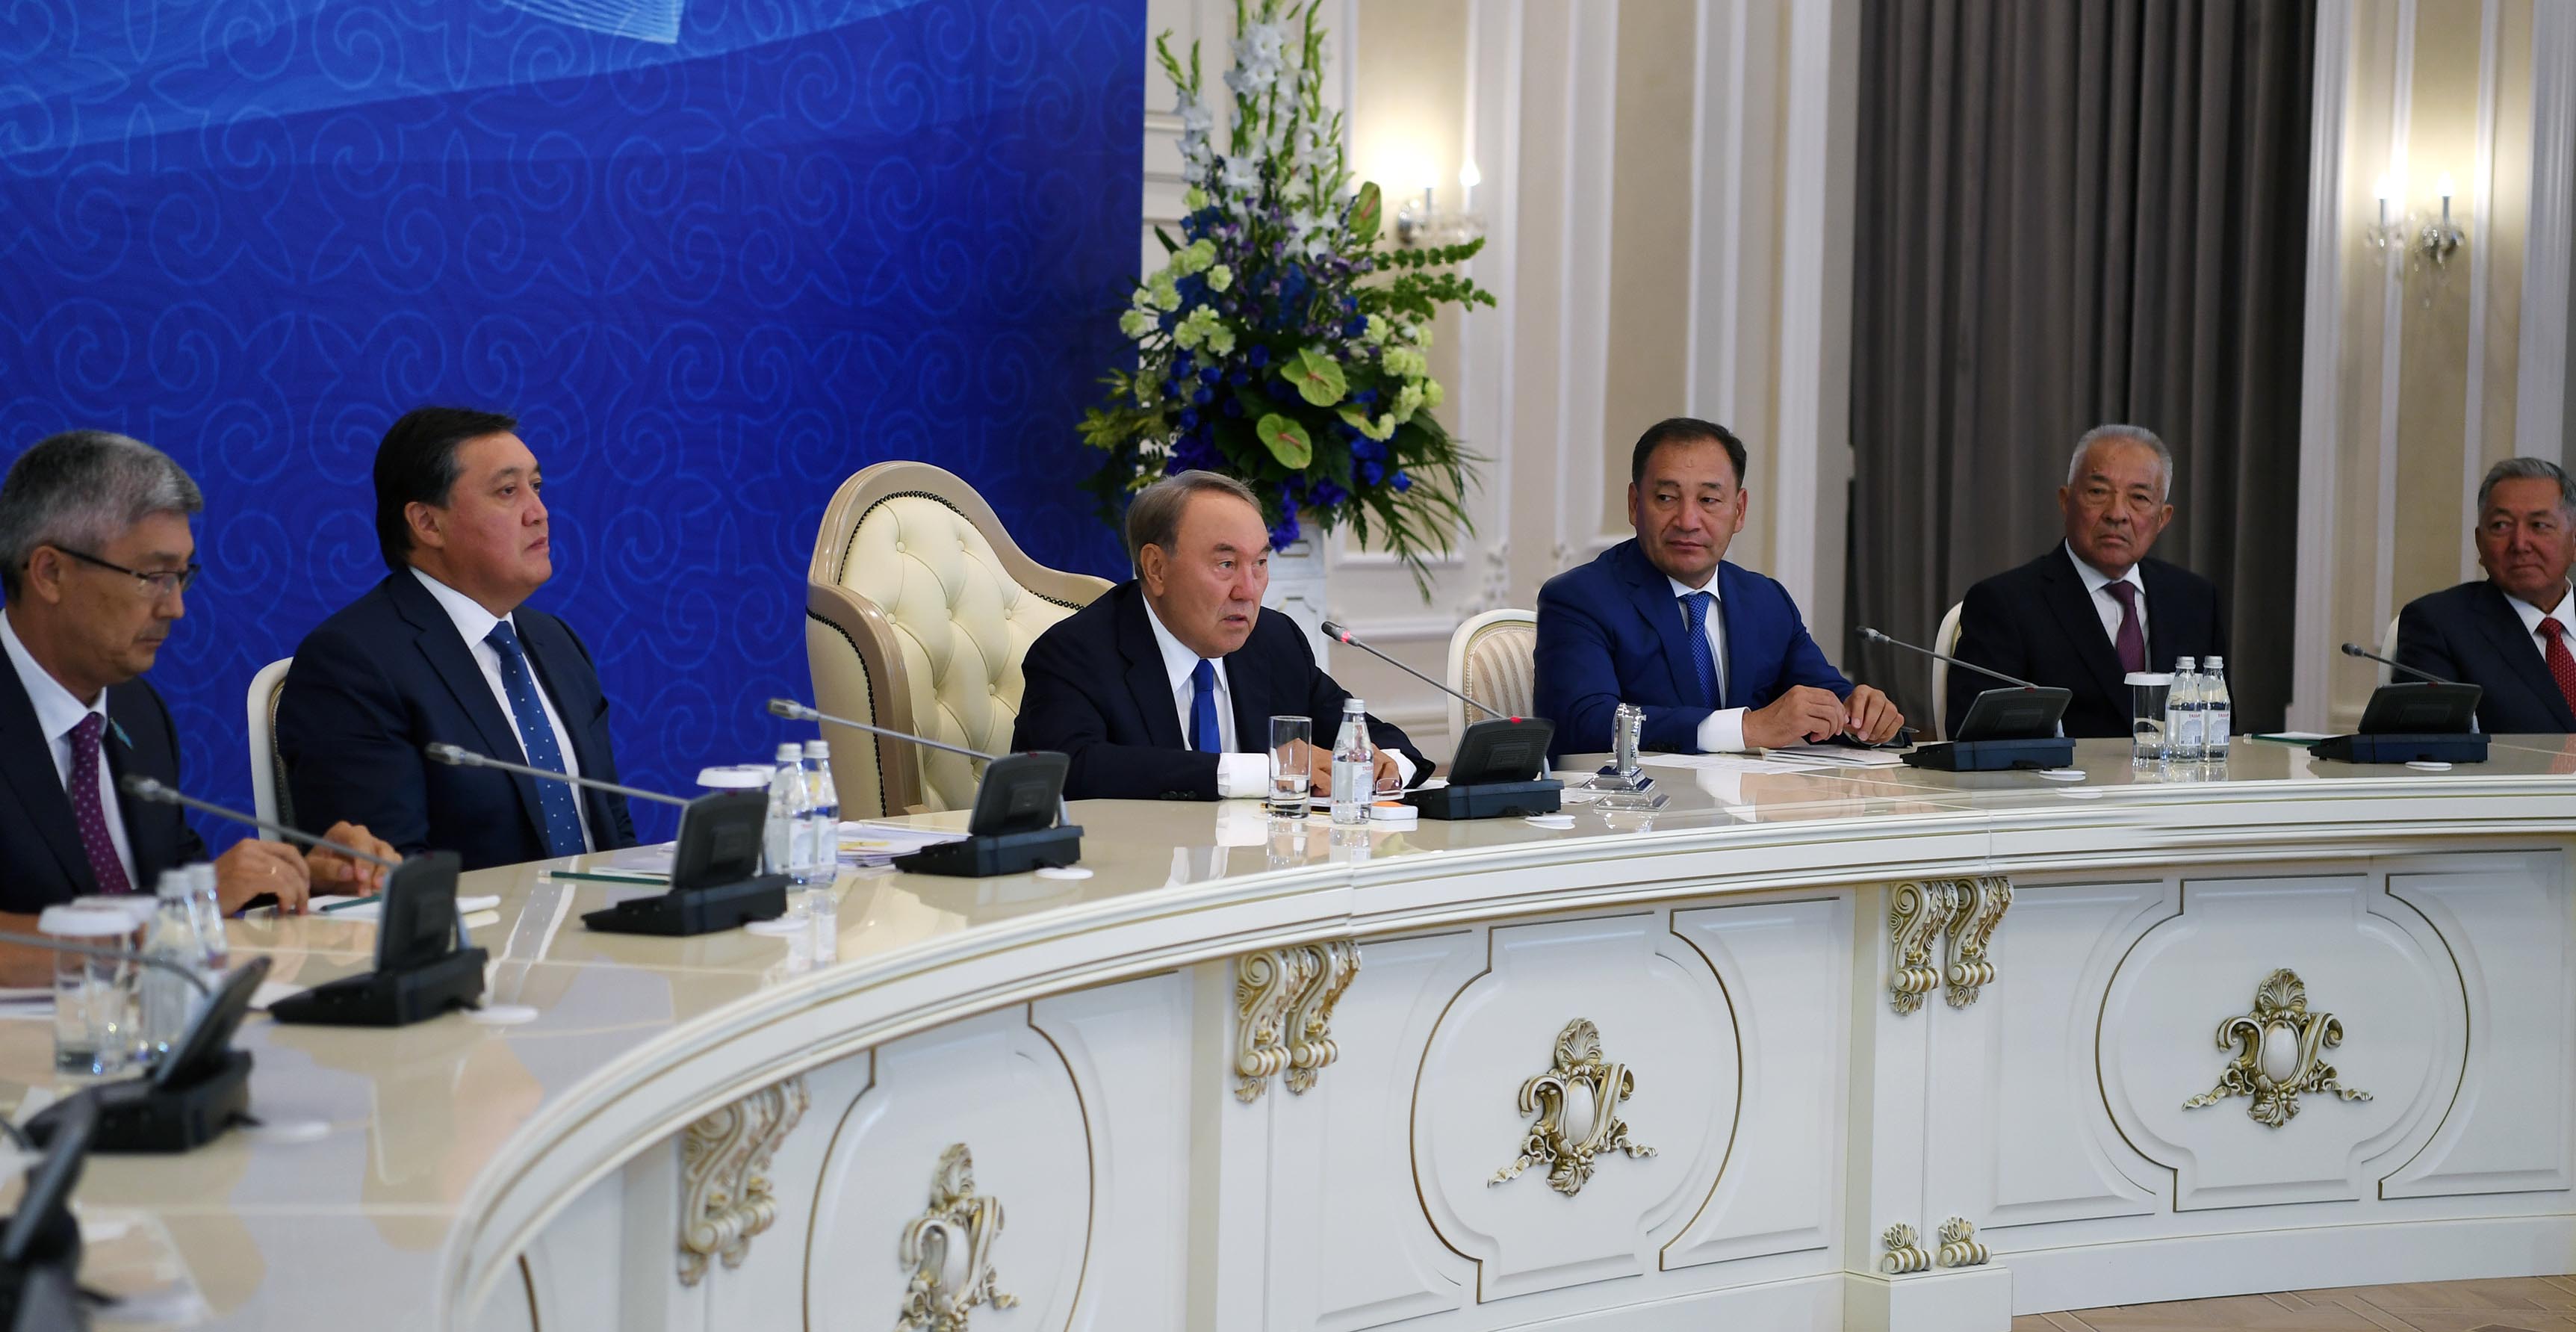 В Актау соберутся главы прикаспийских государств и подпишут исторический документ, к которому мы шли 20 лет - Нурсултан Назарбаев